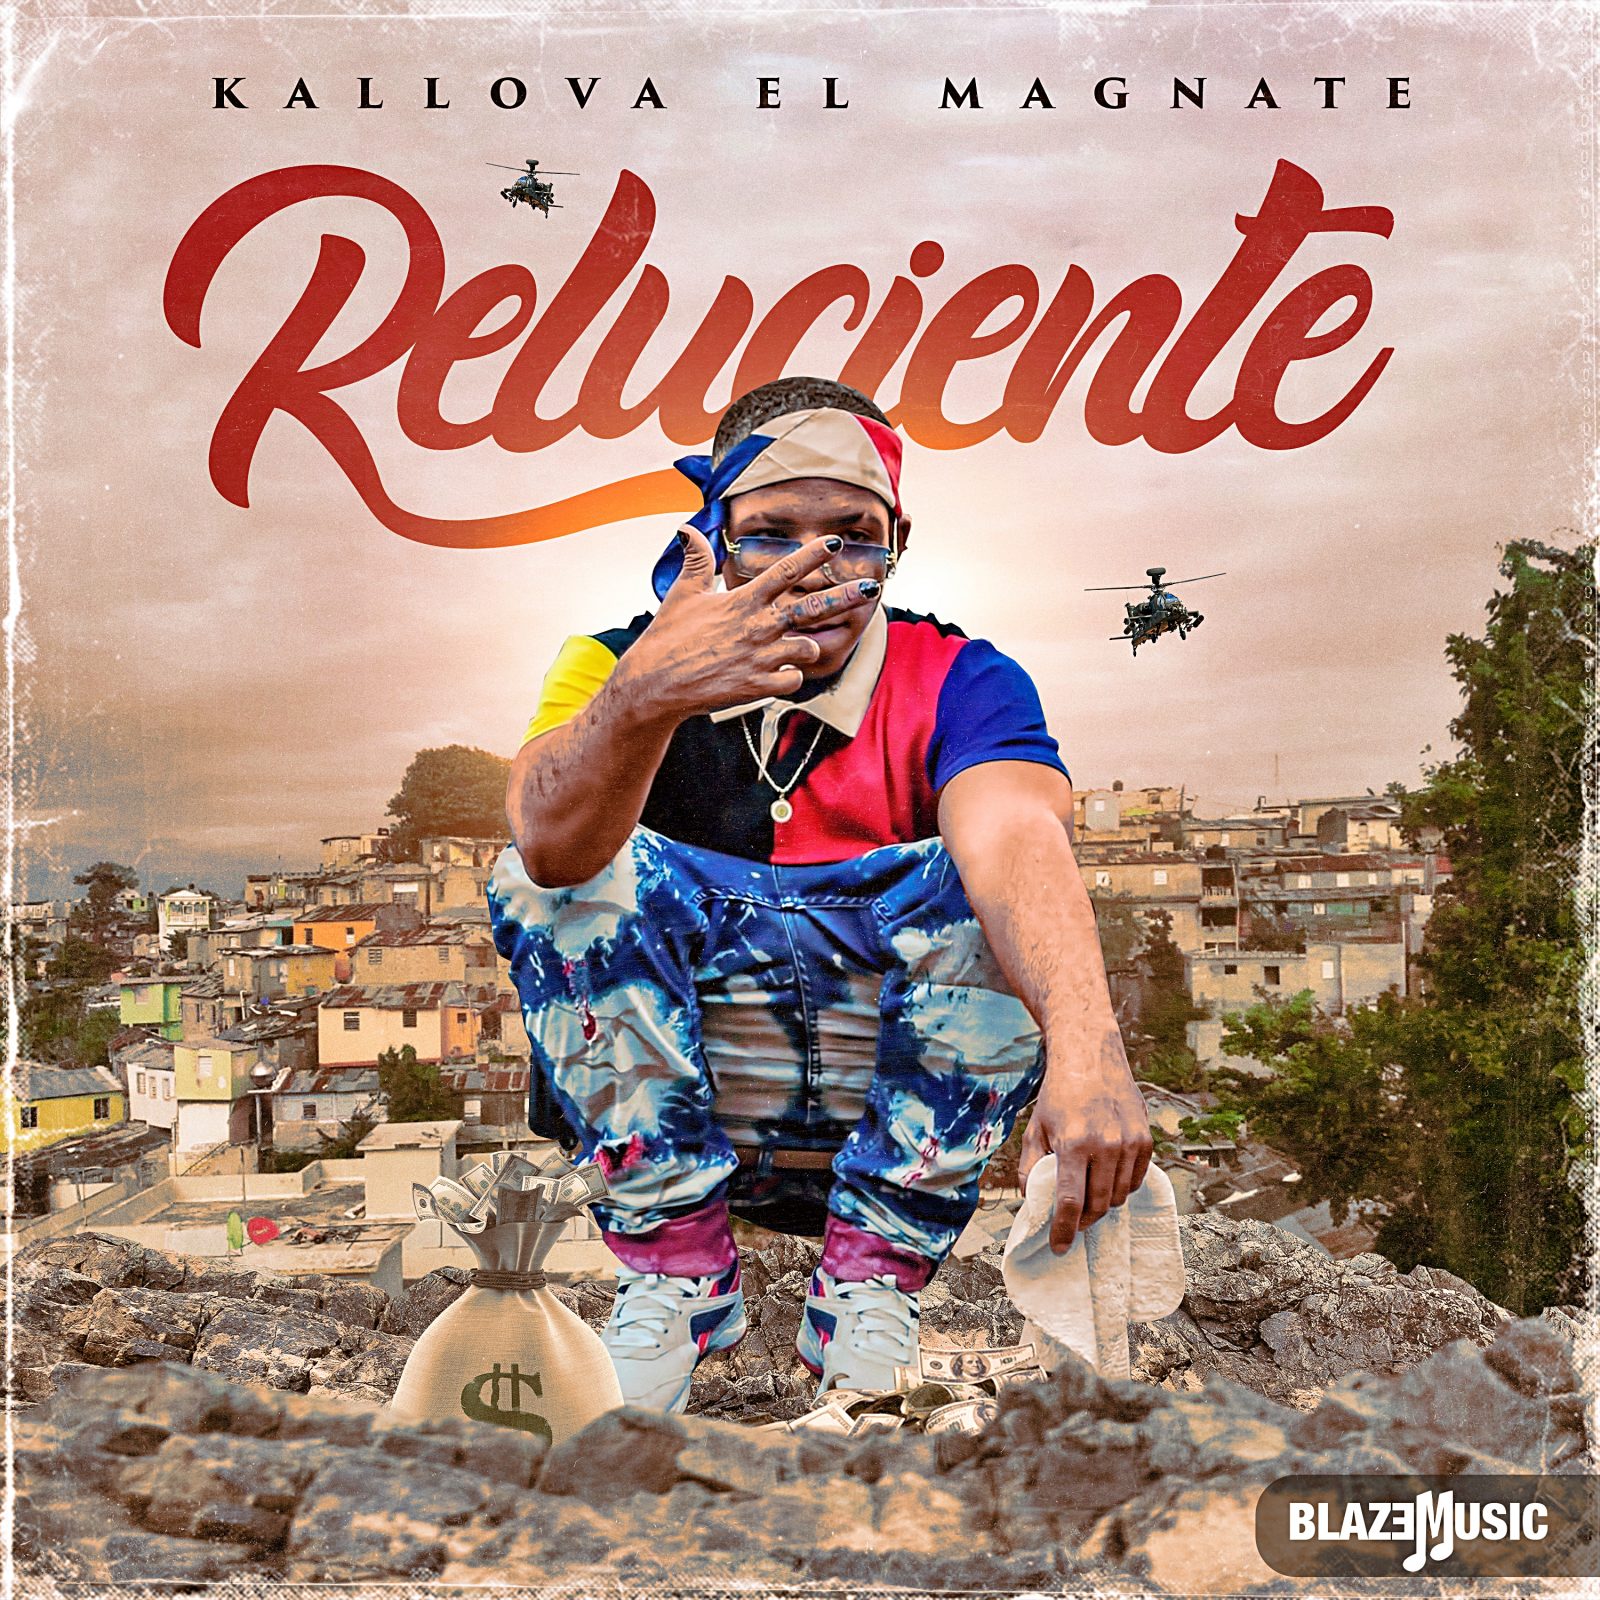 Kallova El Magnate - Reluciente (EP)